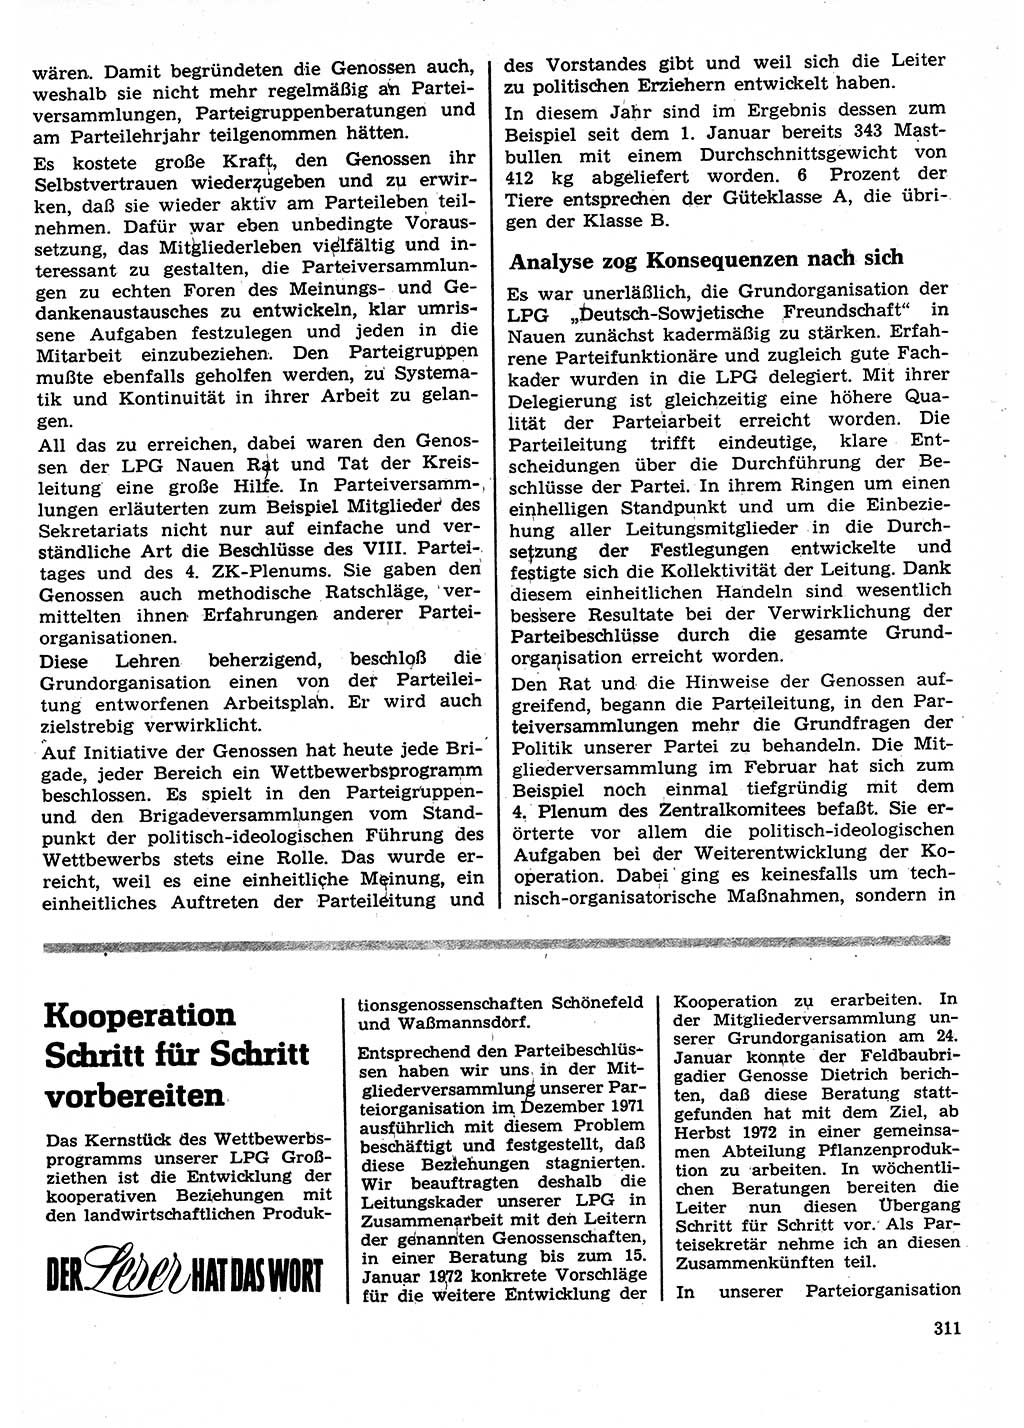 Neuer Weg (NW), Organ des Zentralkomitees (ZK) der SED (Sozialistische Einheitspartei Deutschlands) für Fragen des Parteilebens, 27. Jahrgang [Deutsche Demokratische Republik (DDR)] 1972, Seite 311 (NW ZK SED DDR 1972, S. 311)